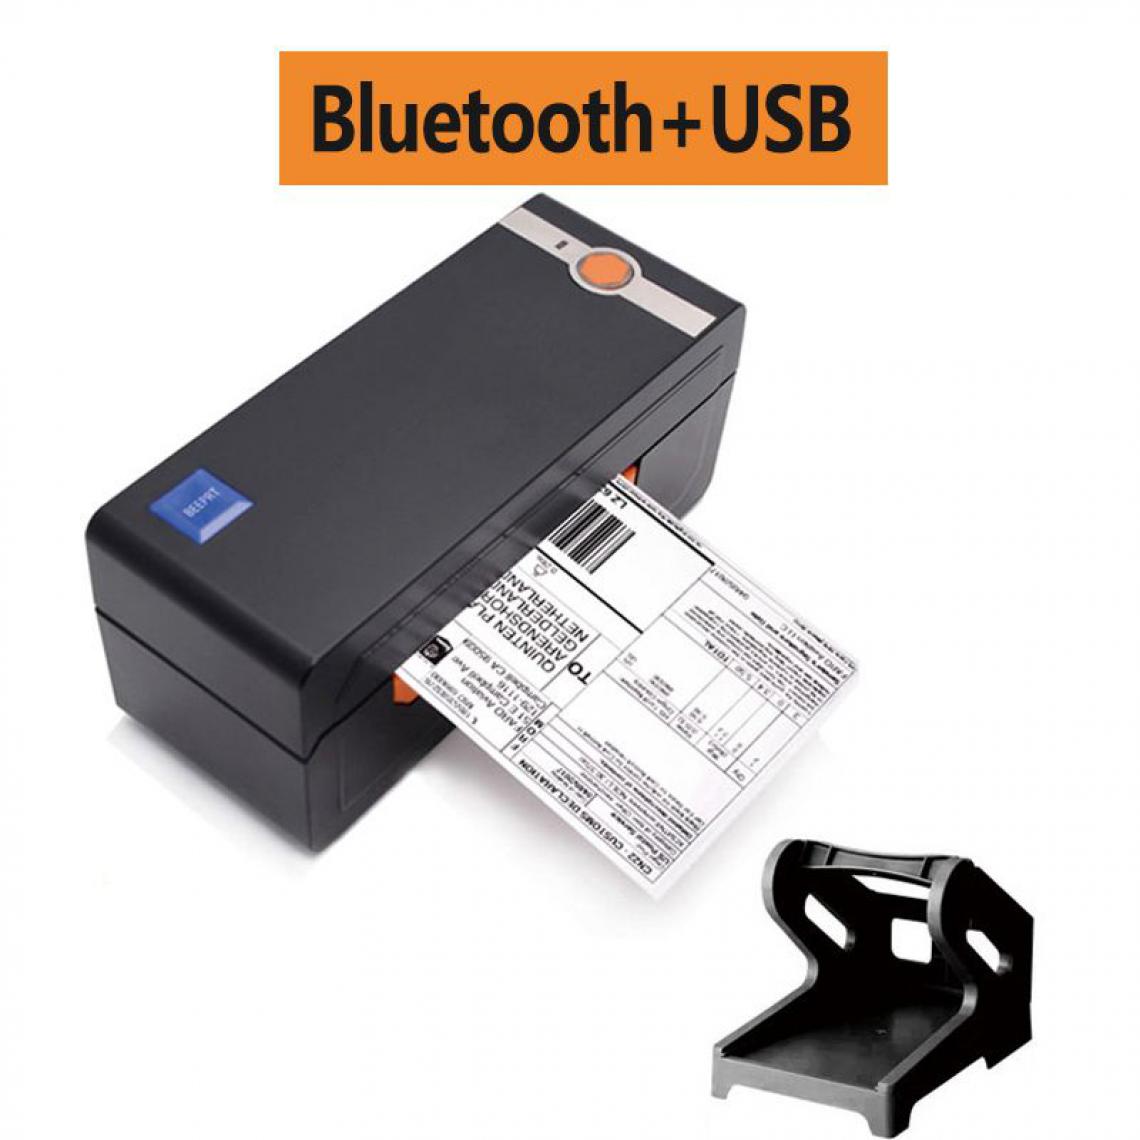 Generic - Imprimante Thermique Portable de Tickets de Caisse 20 à 80 mm avec Holder  , Connexion par  USB et Bluetooth  , Compatible avec Mac OS / IOS ,Linux , Window et  Android,- 8.2  * 9.2  * 20 cm  - Noir  - Imprimantes d'étiquettes